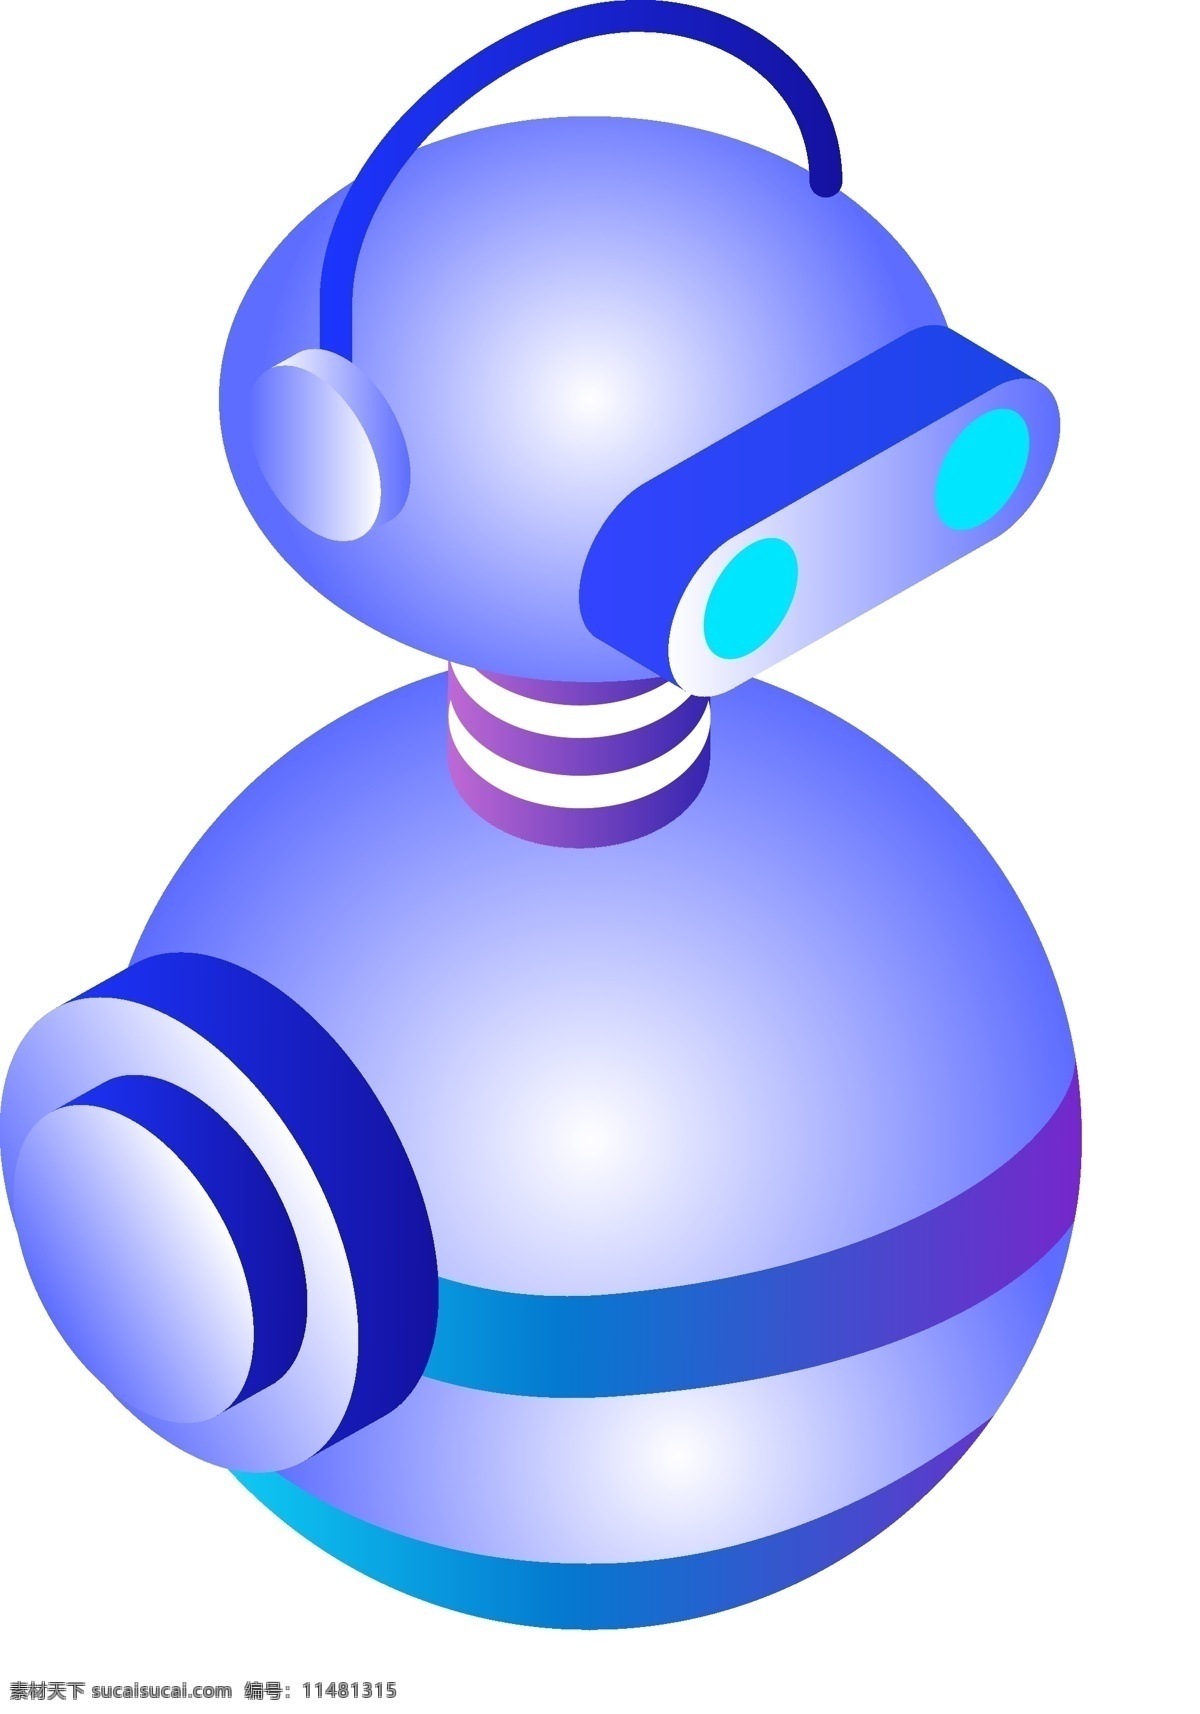 电动 机器人 插画 漂亮机器人 卡通的插画 机器人插画 电动机器人 智能机器人 太空机器人